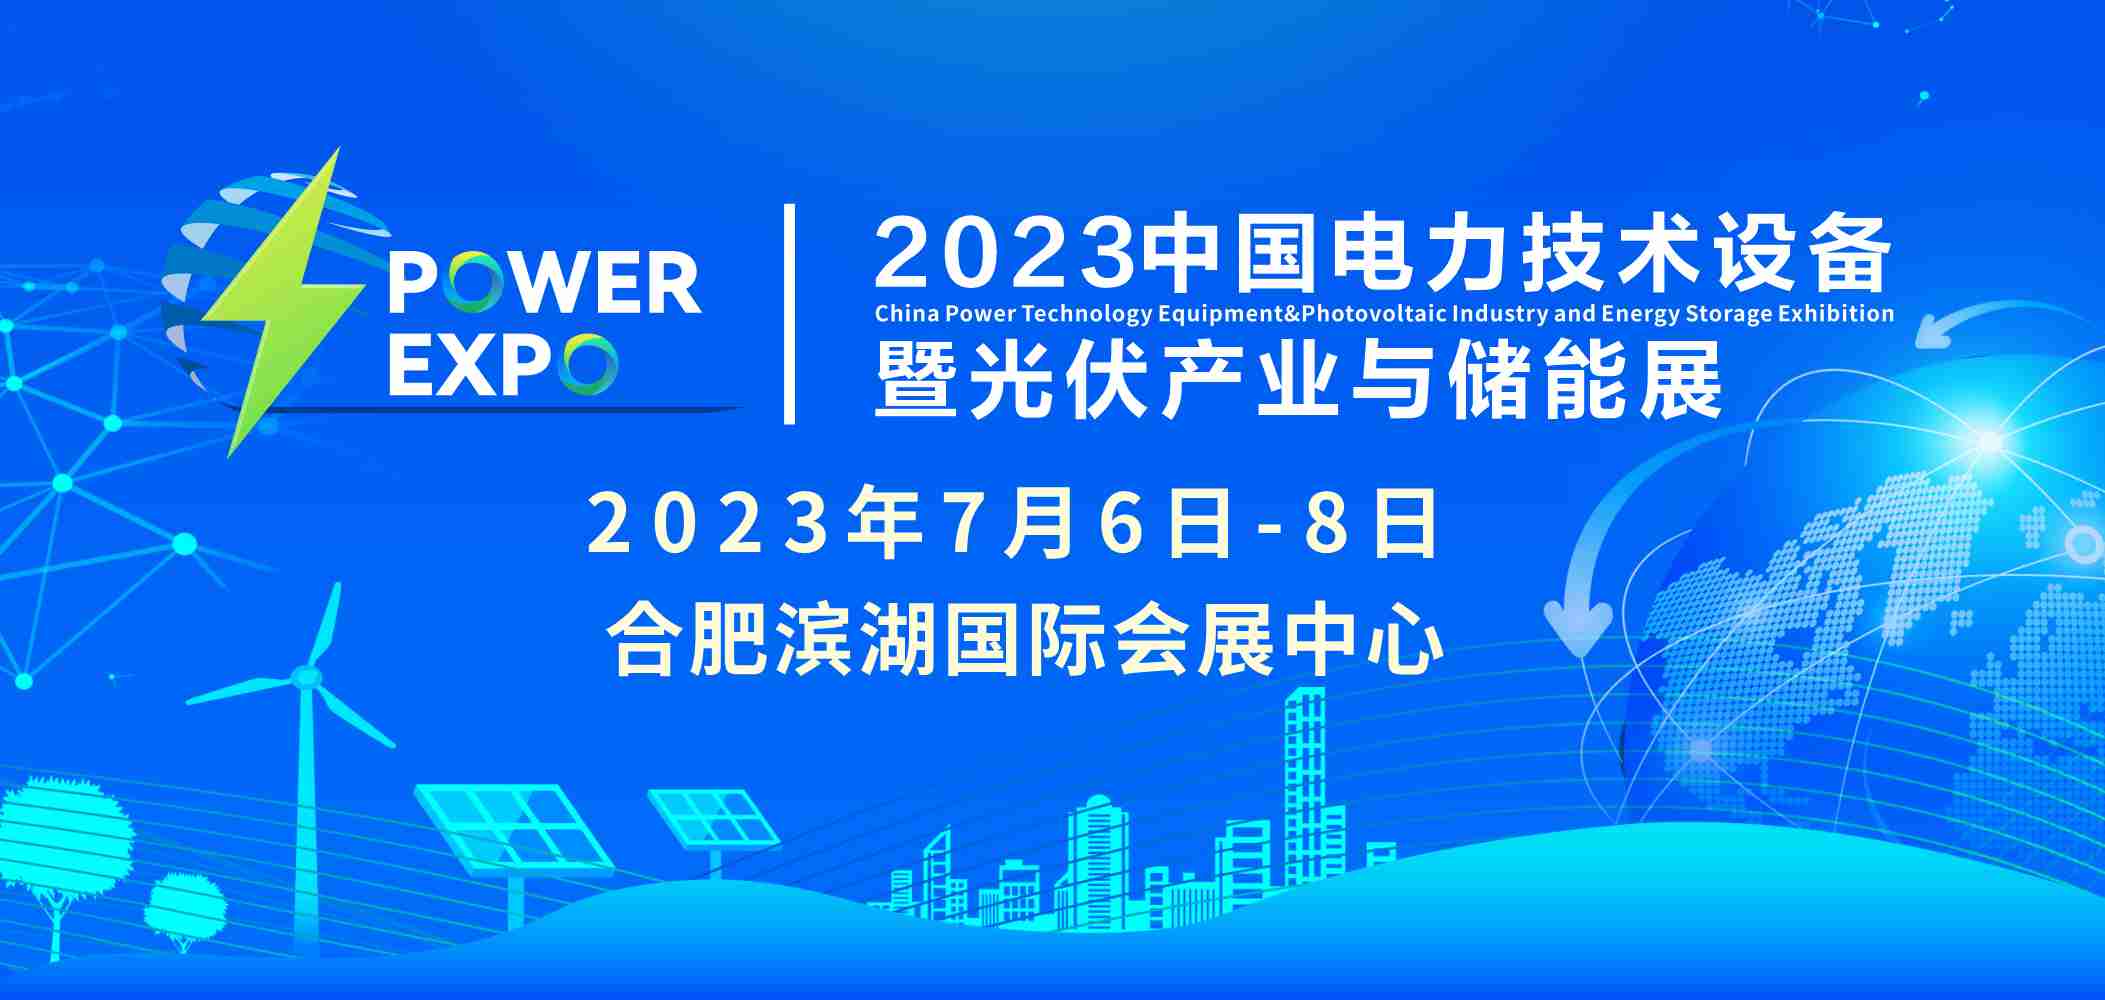 2023中国电力技术设备暨光伏产业与储能展（简称“PETE电力展”）